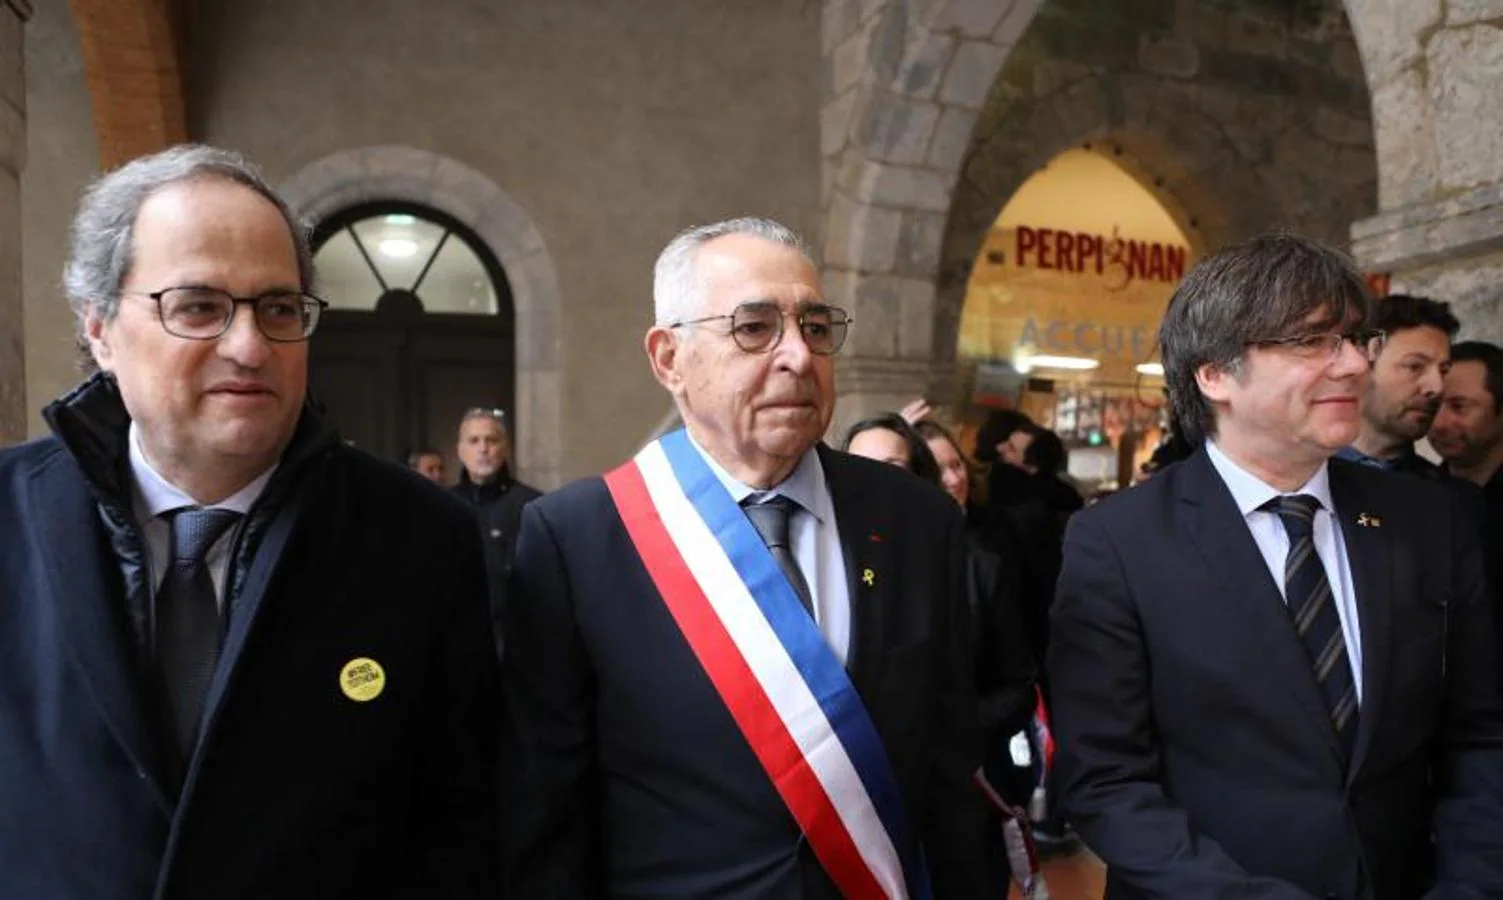 Fotos: El acto de Puigdemont en Perpignan, en imágenes | Las ...